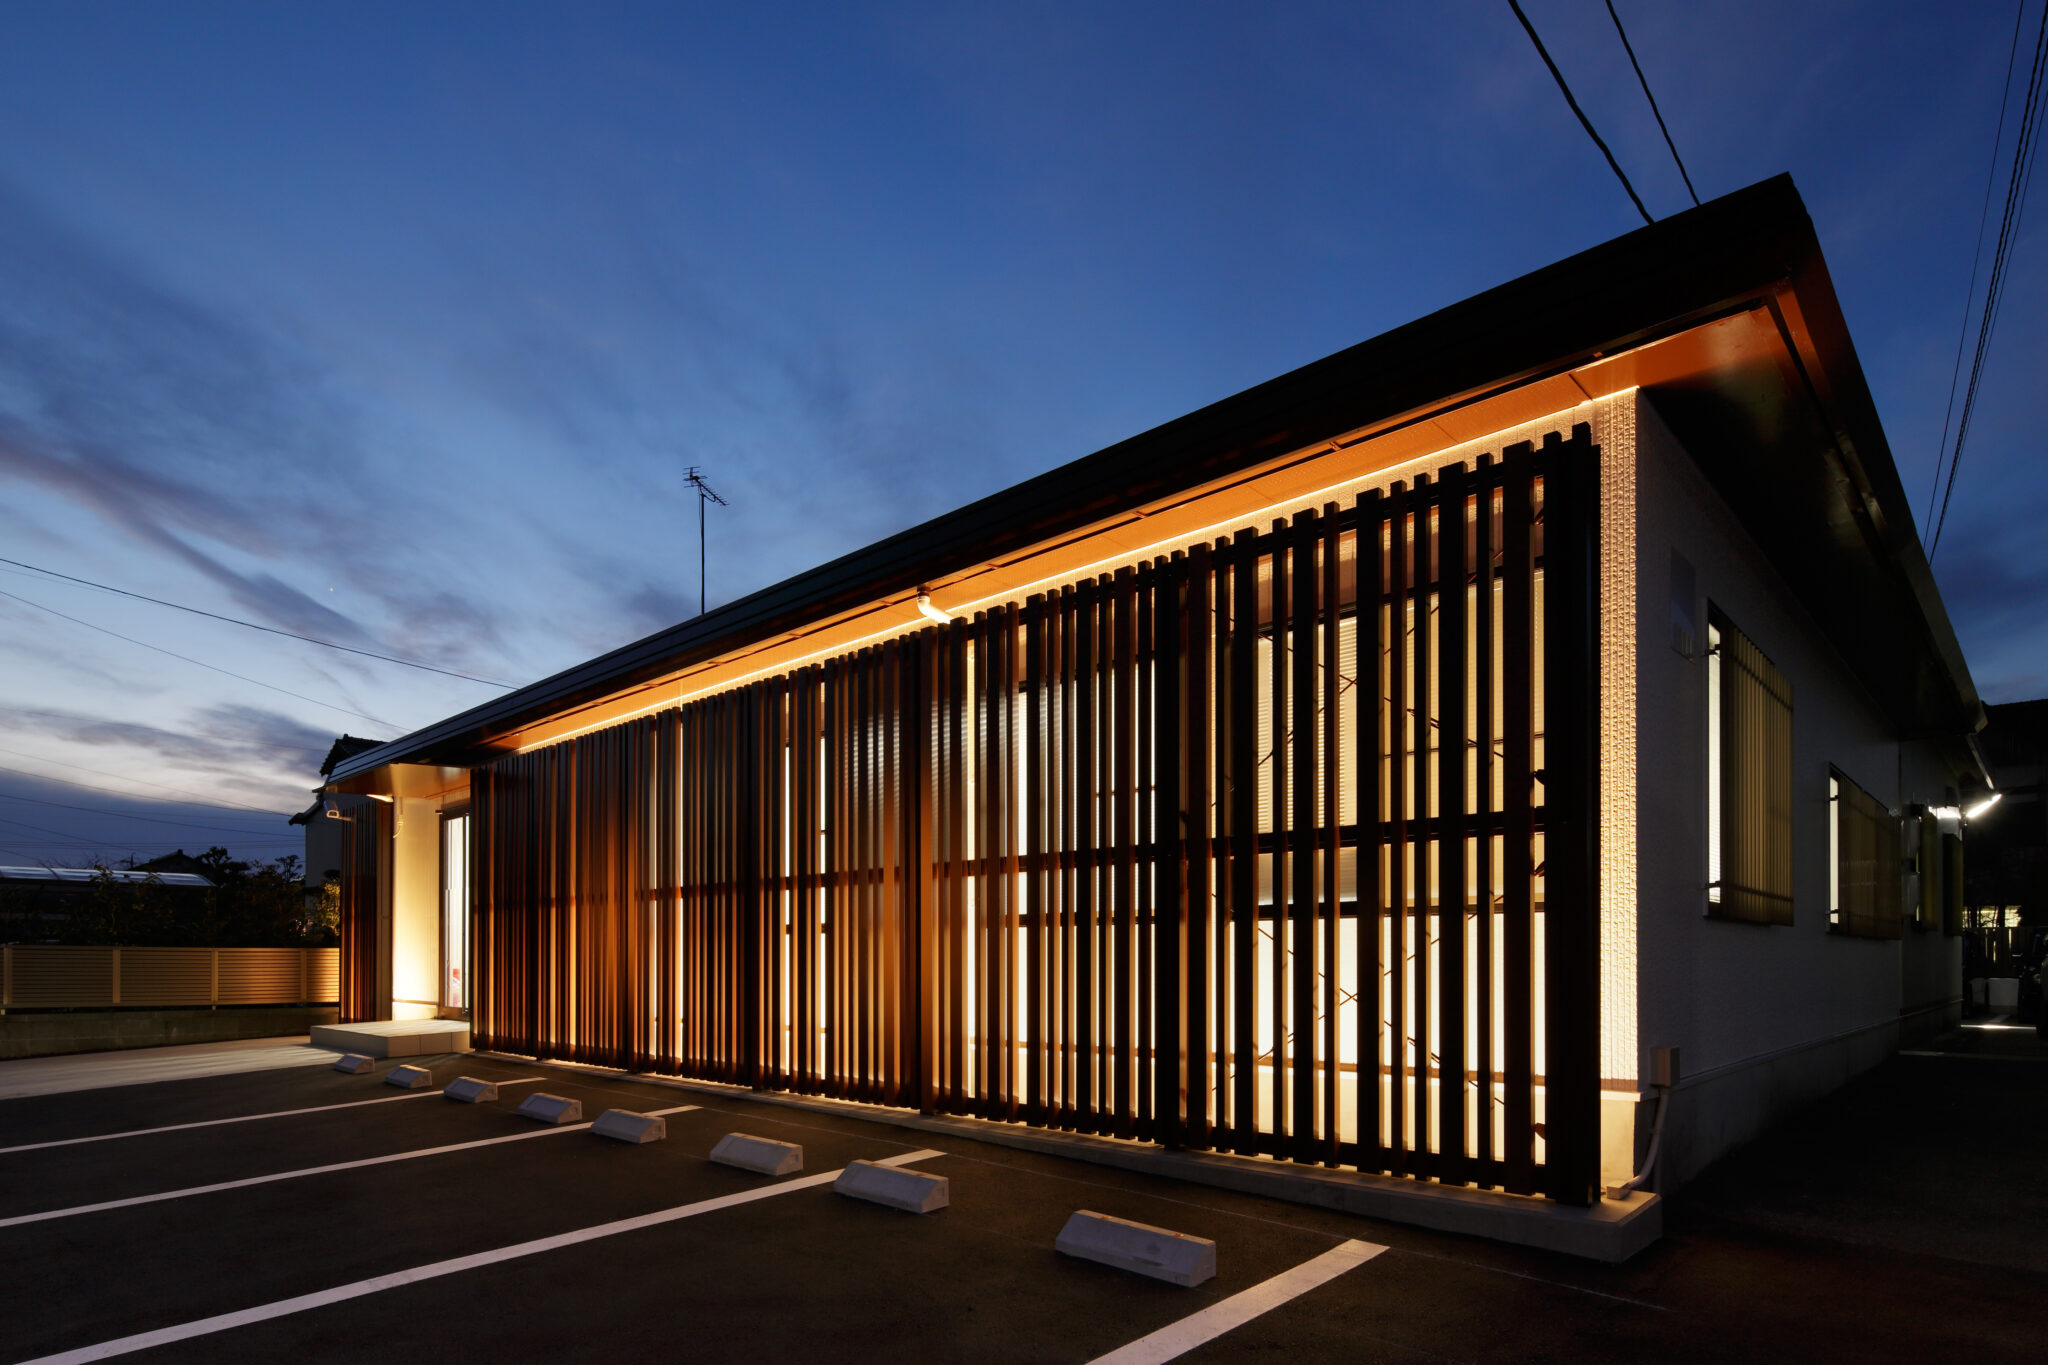 日本相撲協会オフィシャルホテル「浅草横綱ホテル」が更に進化いたします！